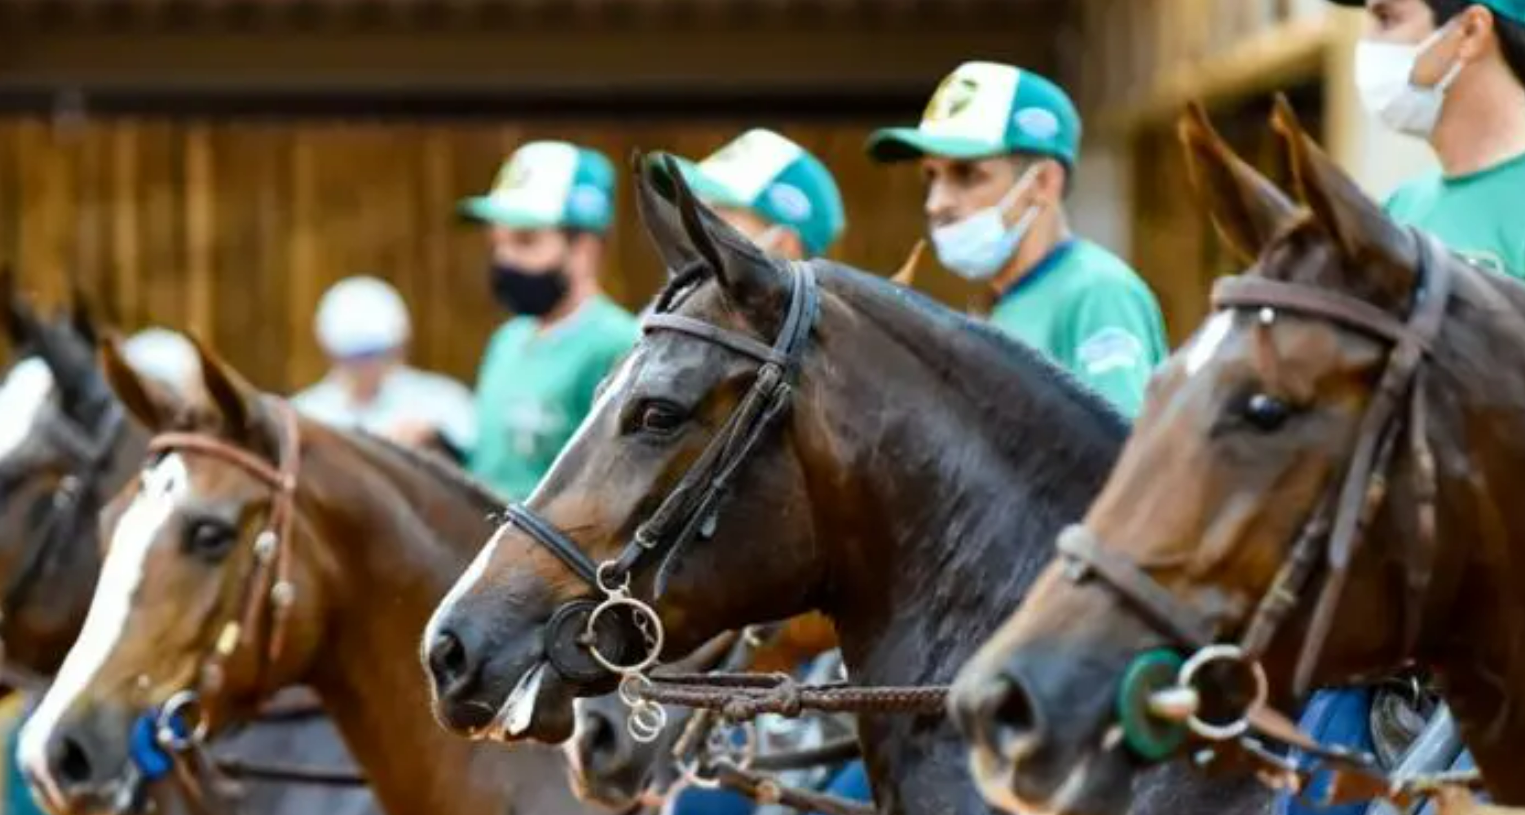 O maior evento da raça Mangalarga do Brasil começou e já comemora números expressivos. 44ª Exposição Nacional do Cavalo Mangalarga, realizada entre hoje (7)...